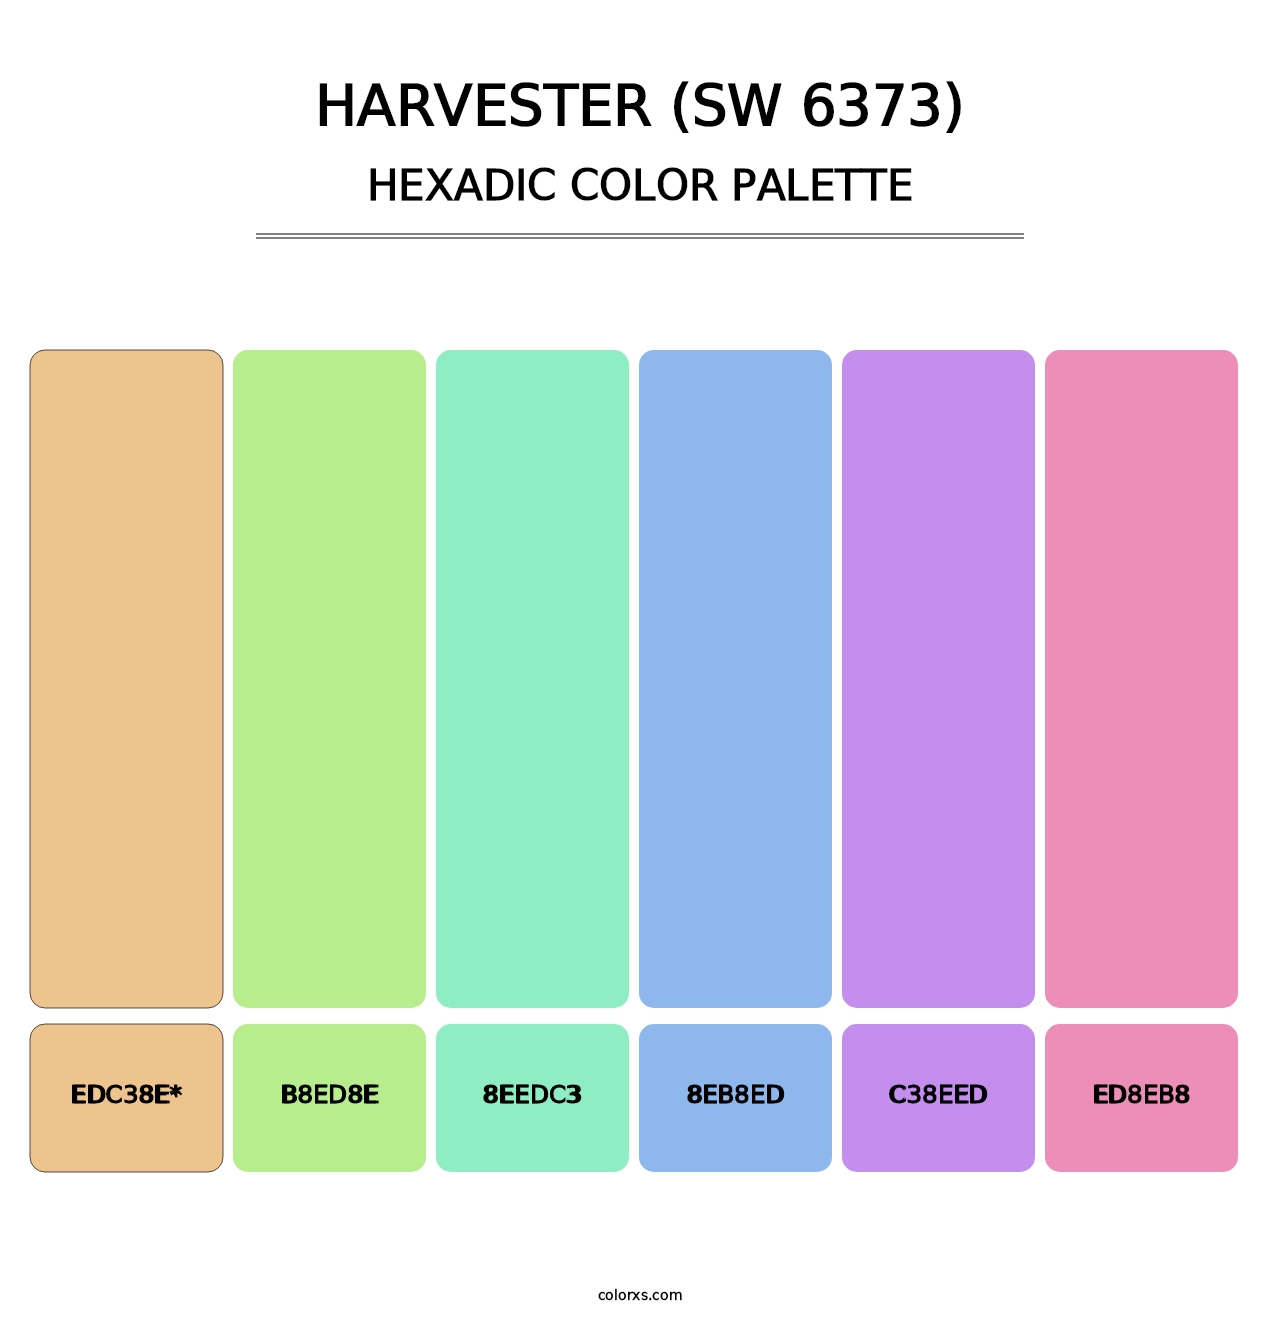 Harvester (SW 6373) - Hexadic Color Palette